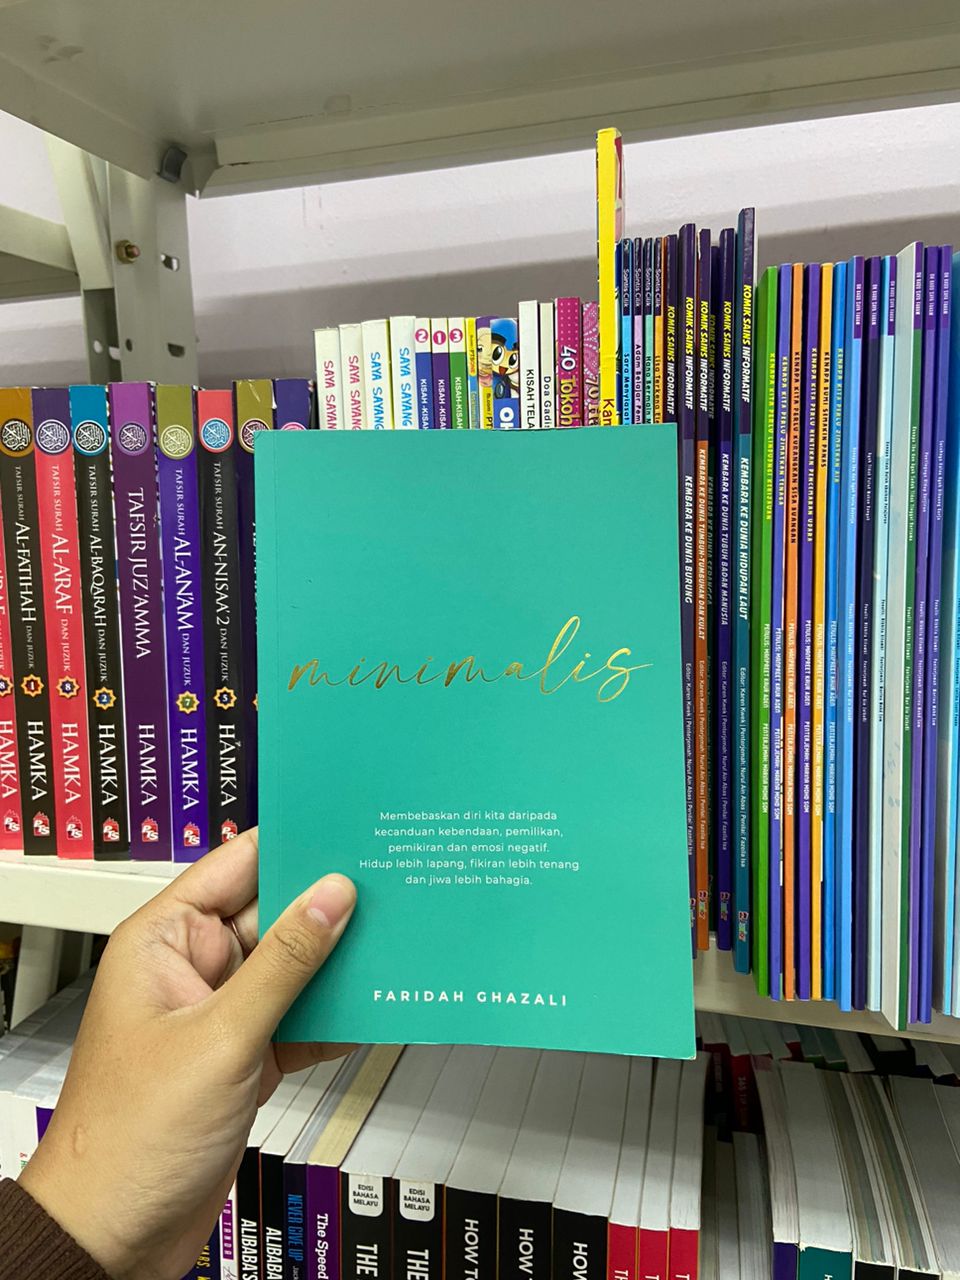 Buku yang membantu untuk memahami konsep minimalis